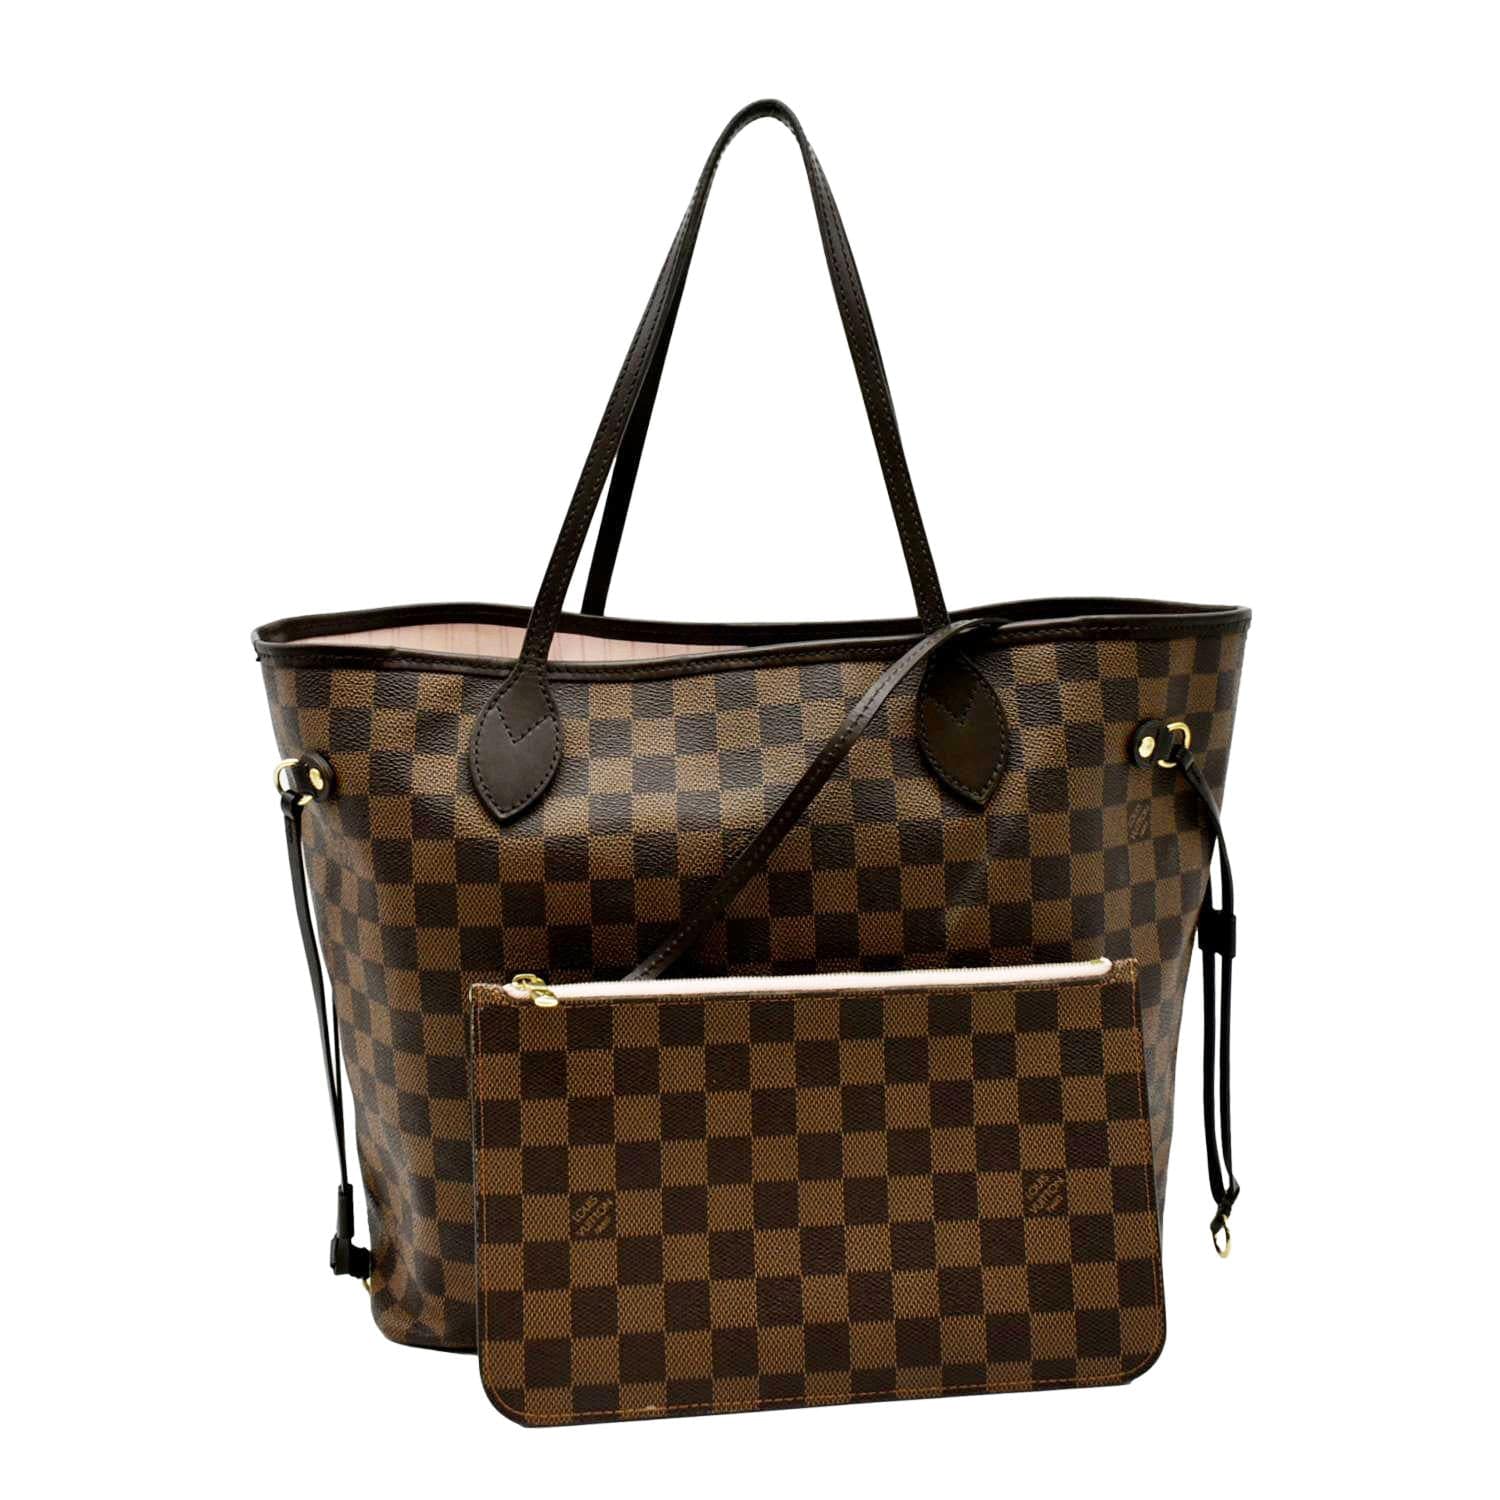 Louis Vuitton, Bags, New Authentic Louis Vuitton Evora Mm Damier Azur